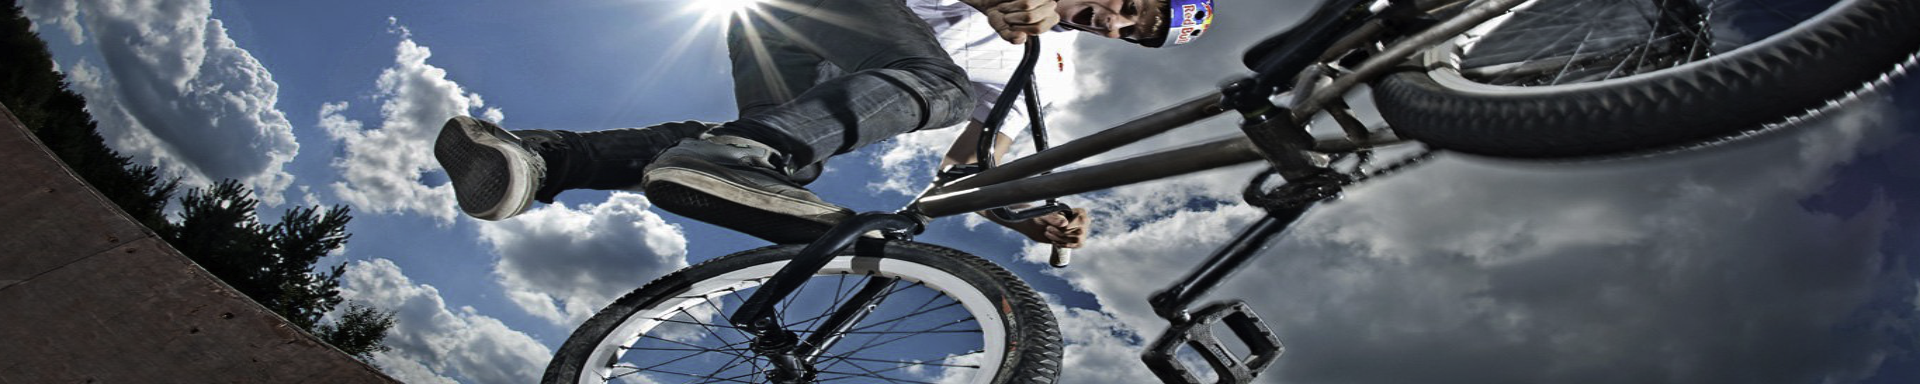 BMX Bikes | GarageAndFab.com | Munro Industries gf-10010304030201